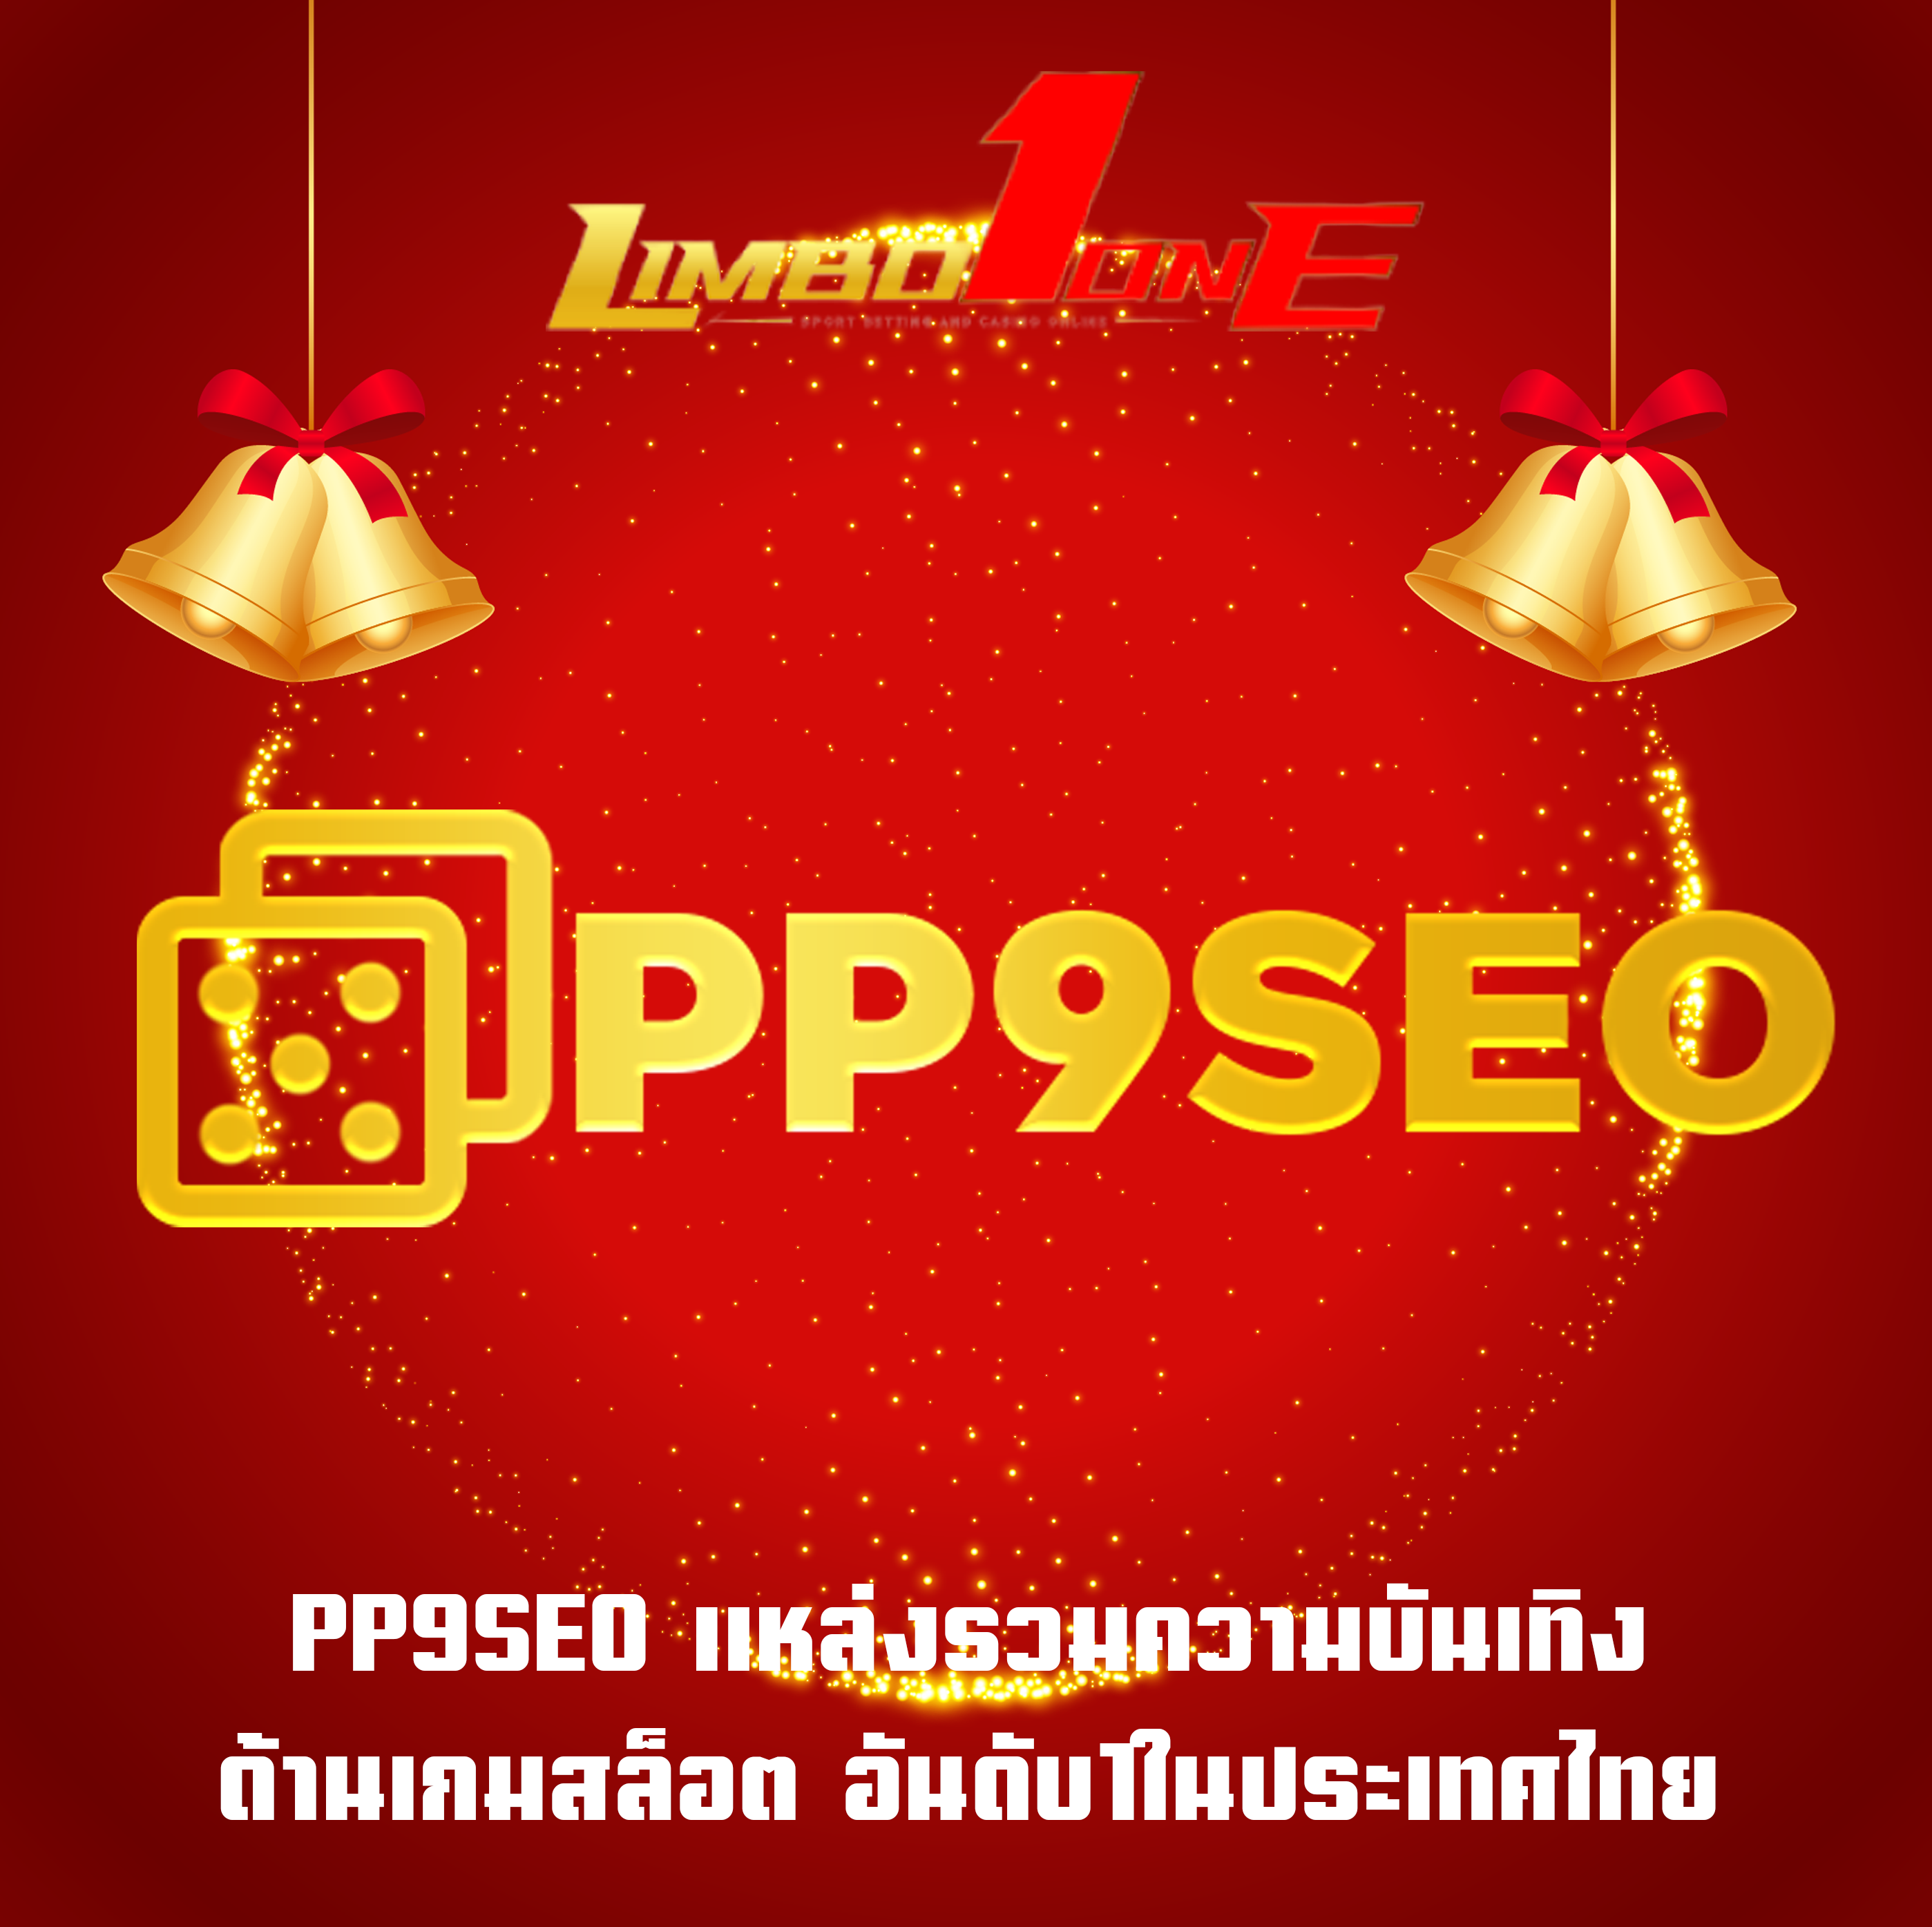 PP9SEO แหล่งรวมความบันเทิง ด้านเกมสล็อต อันดับ1ในประเทศไทย